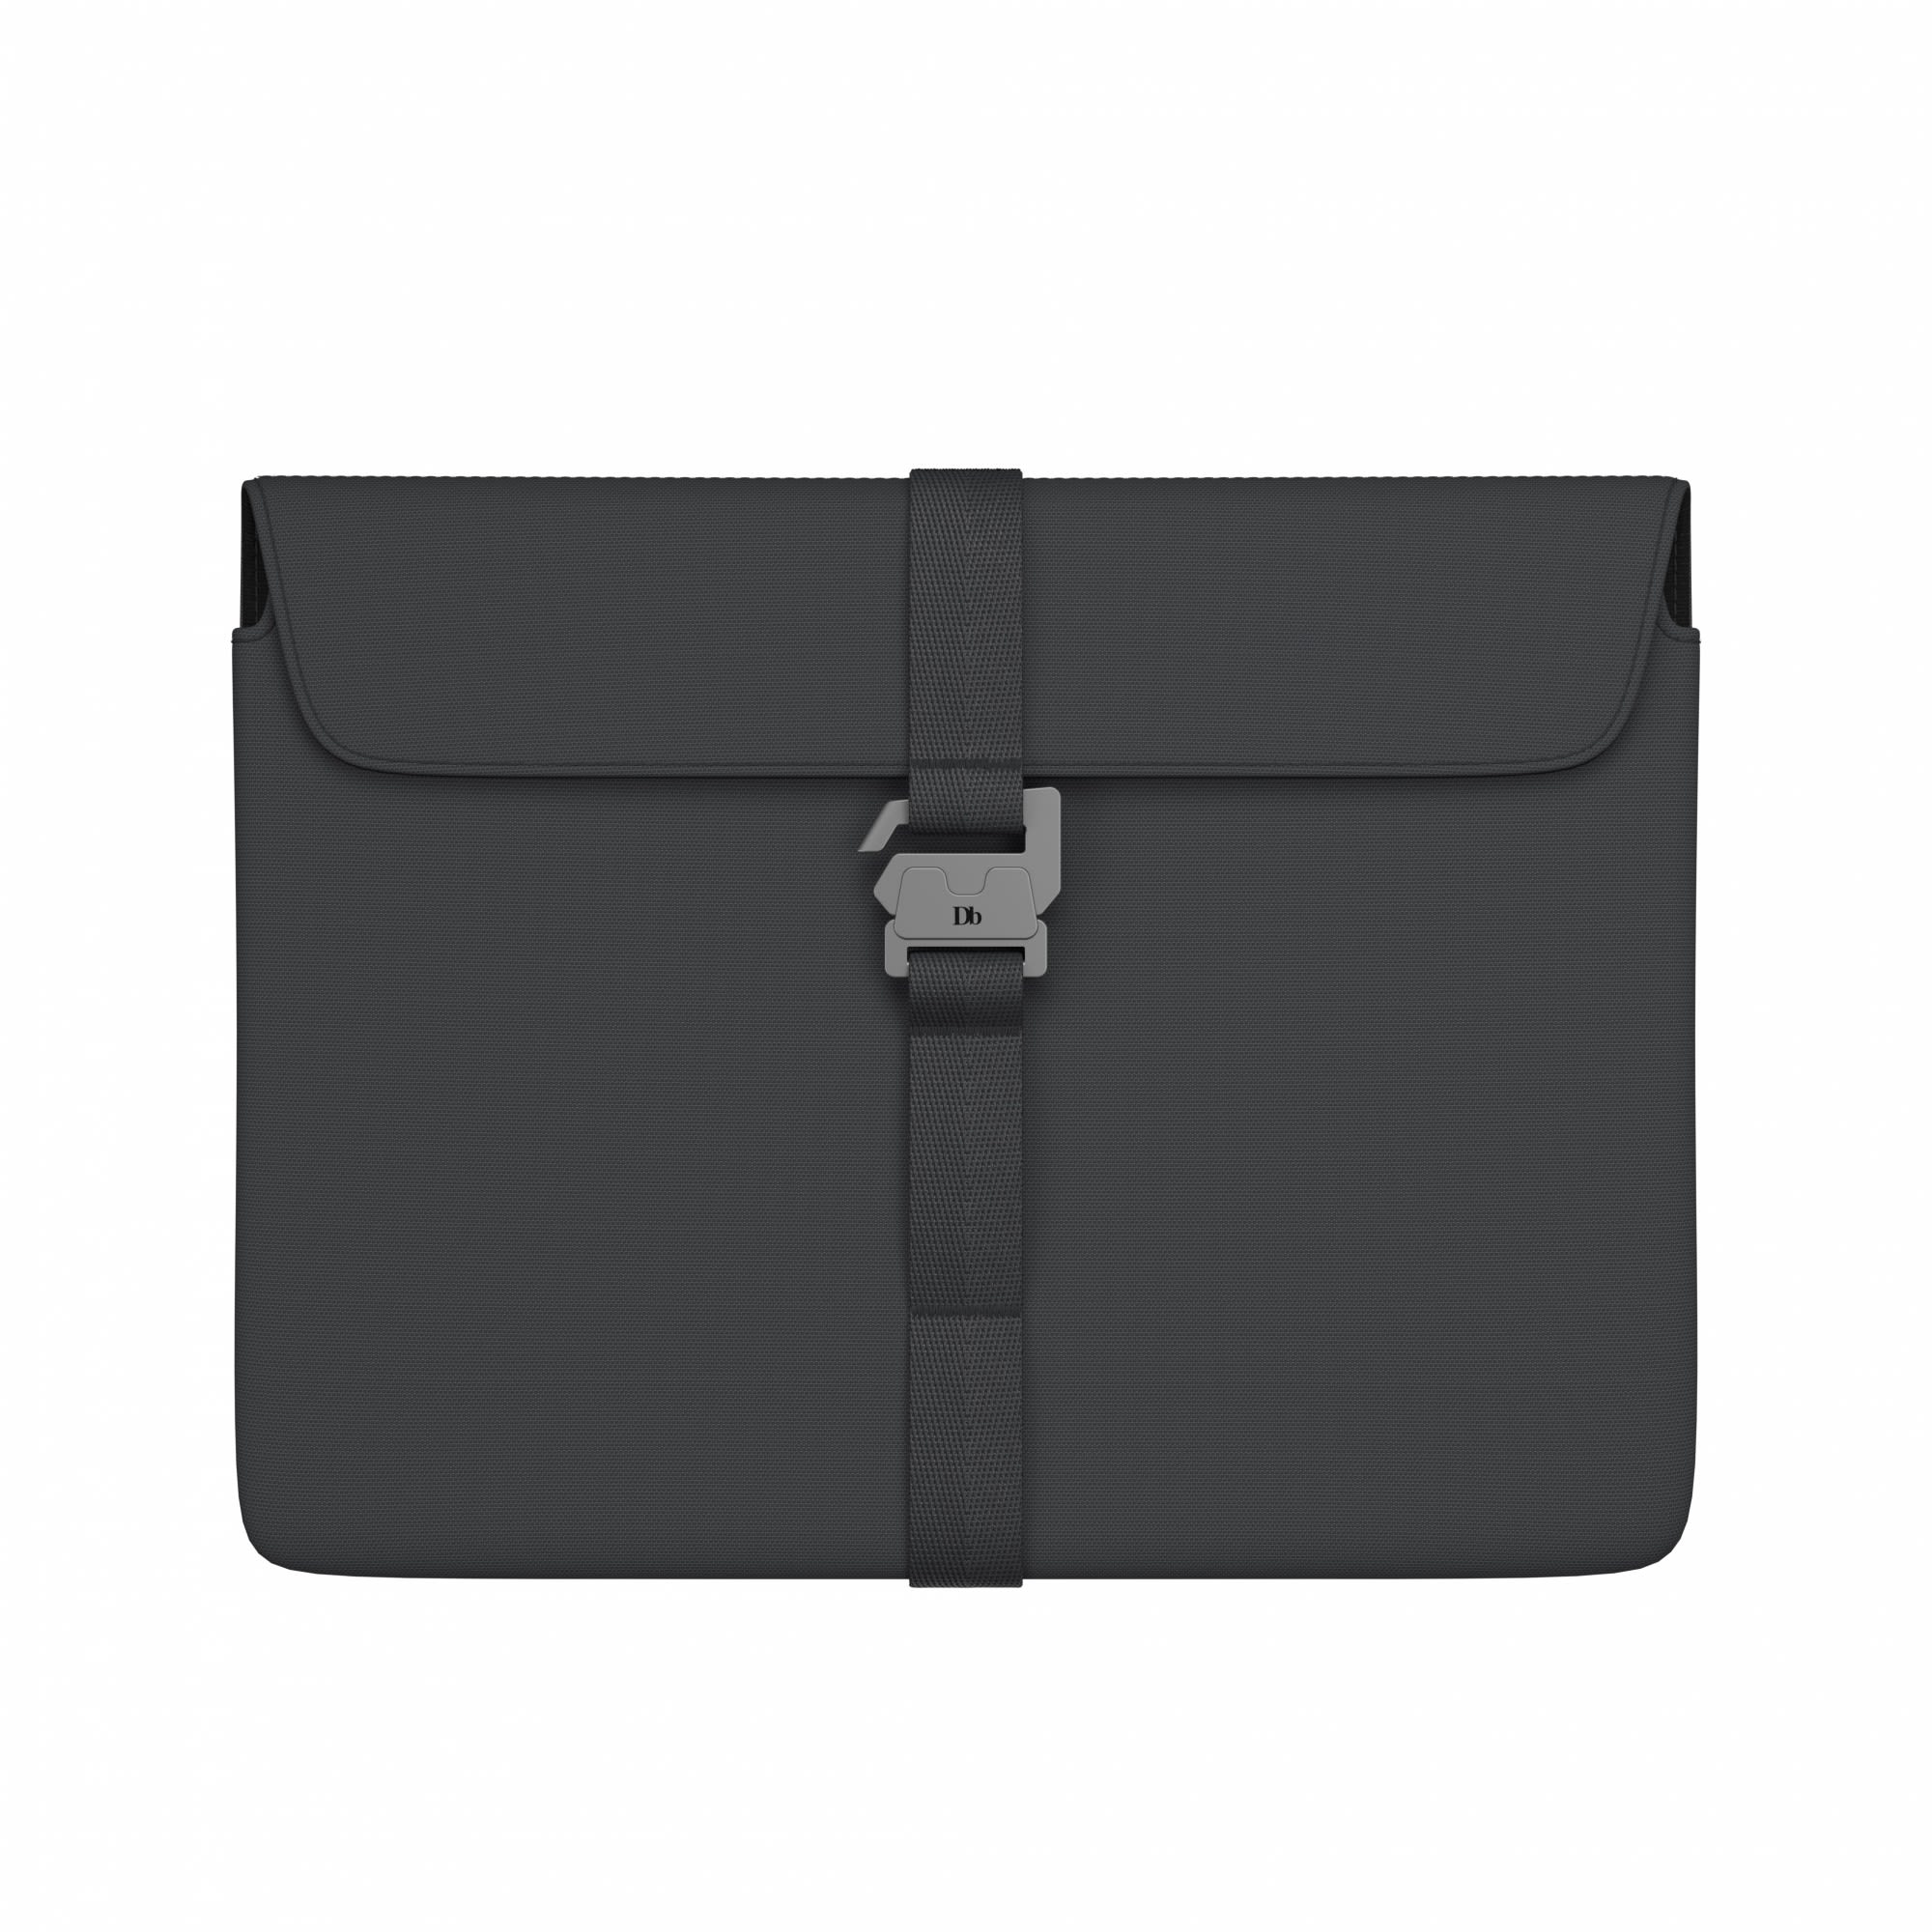 Db THE Vrldsvan Laptop Sleeve 13- Grau- Notebooktaschen- Grsse 13 - Farbe Gneiss unter Db